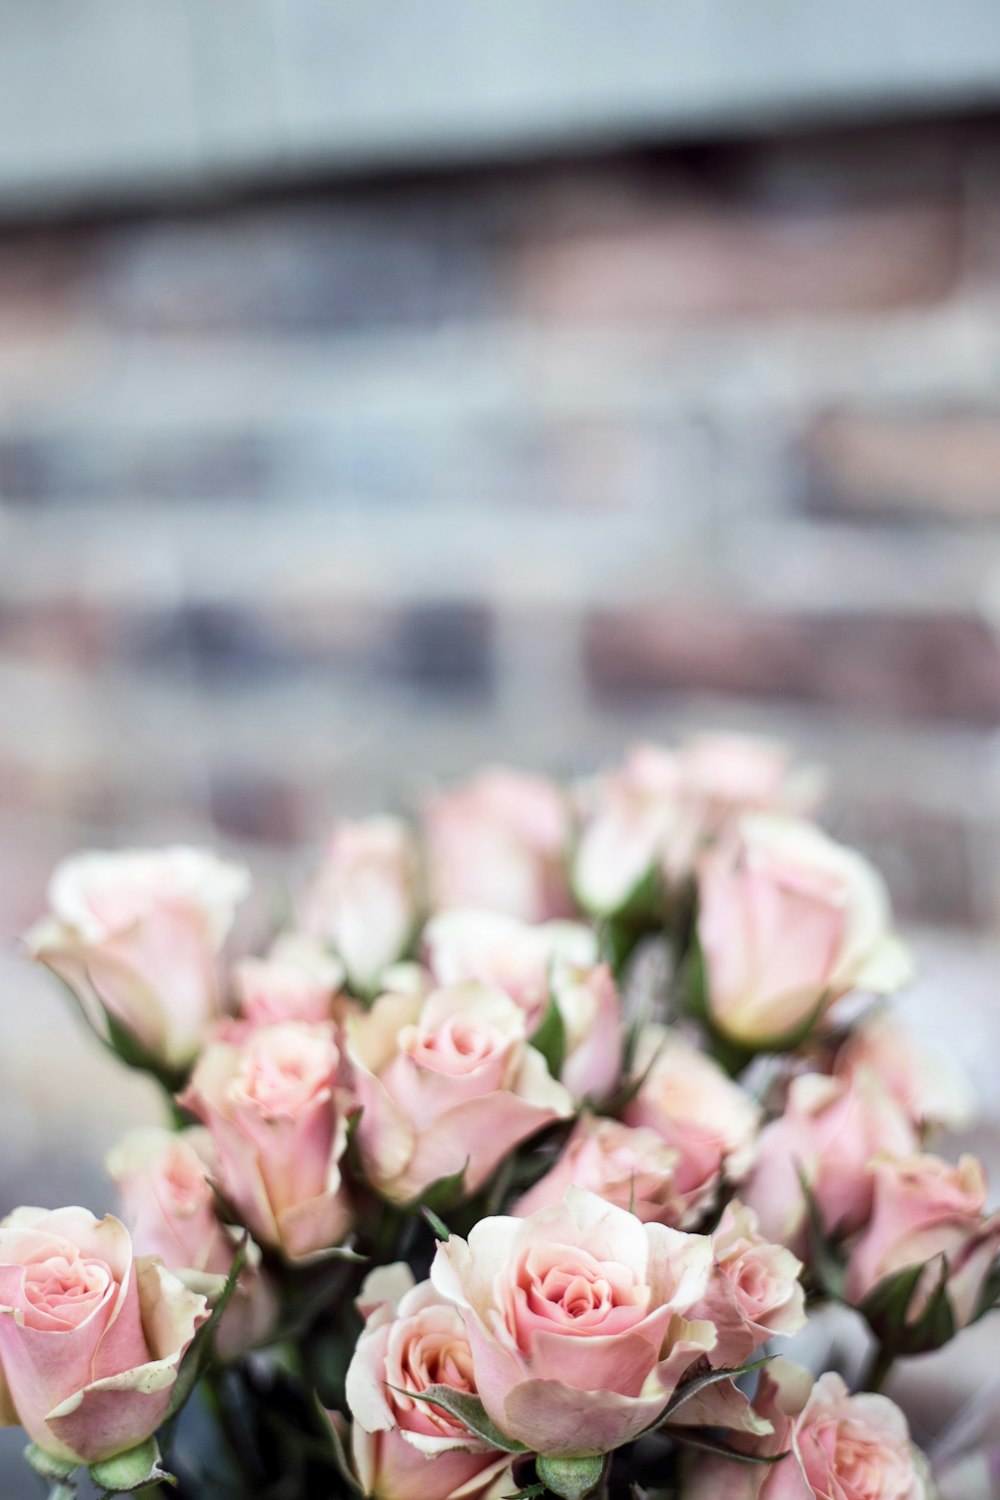 Fotografía de enfoque selectivo de flores de rosas rosadas